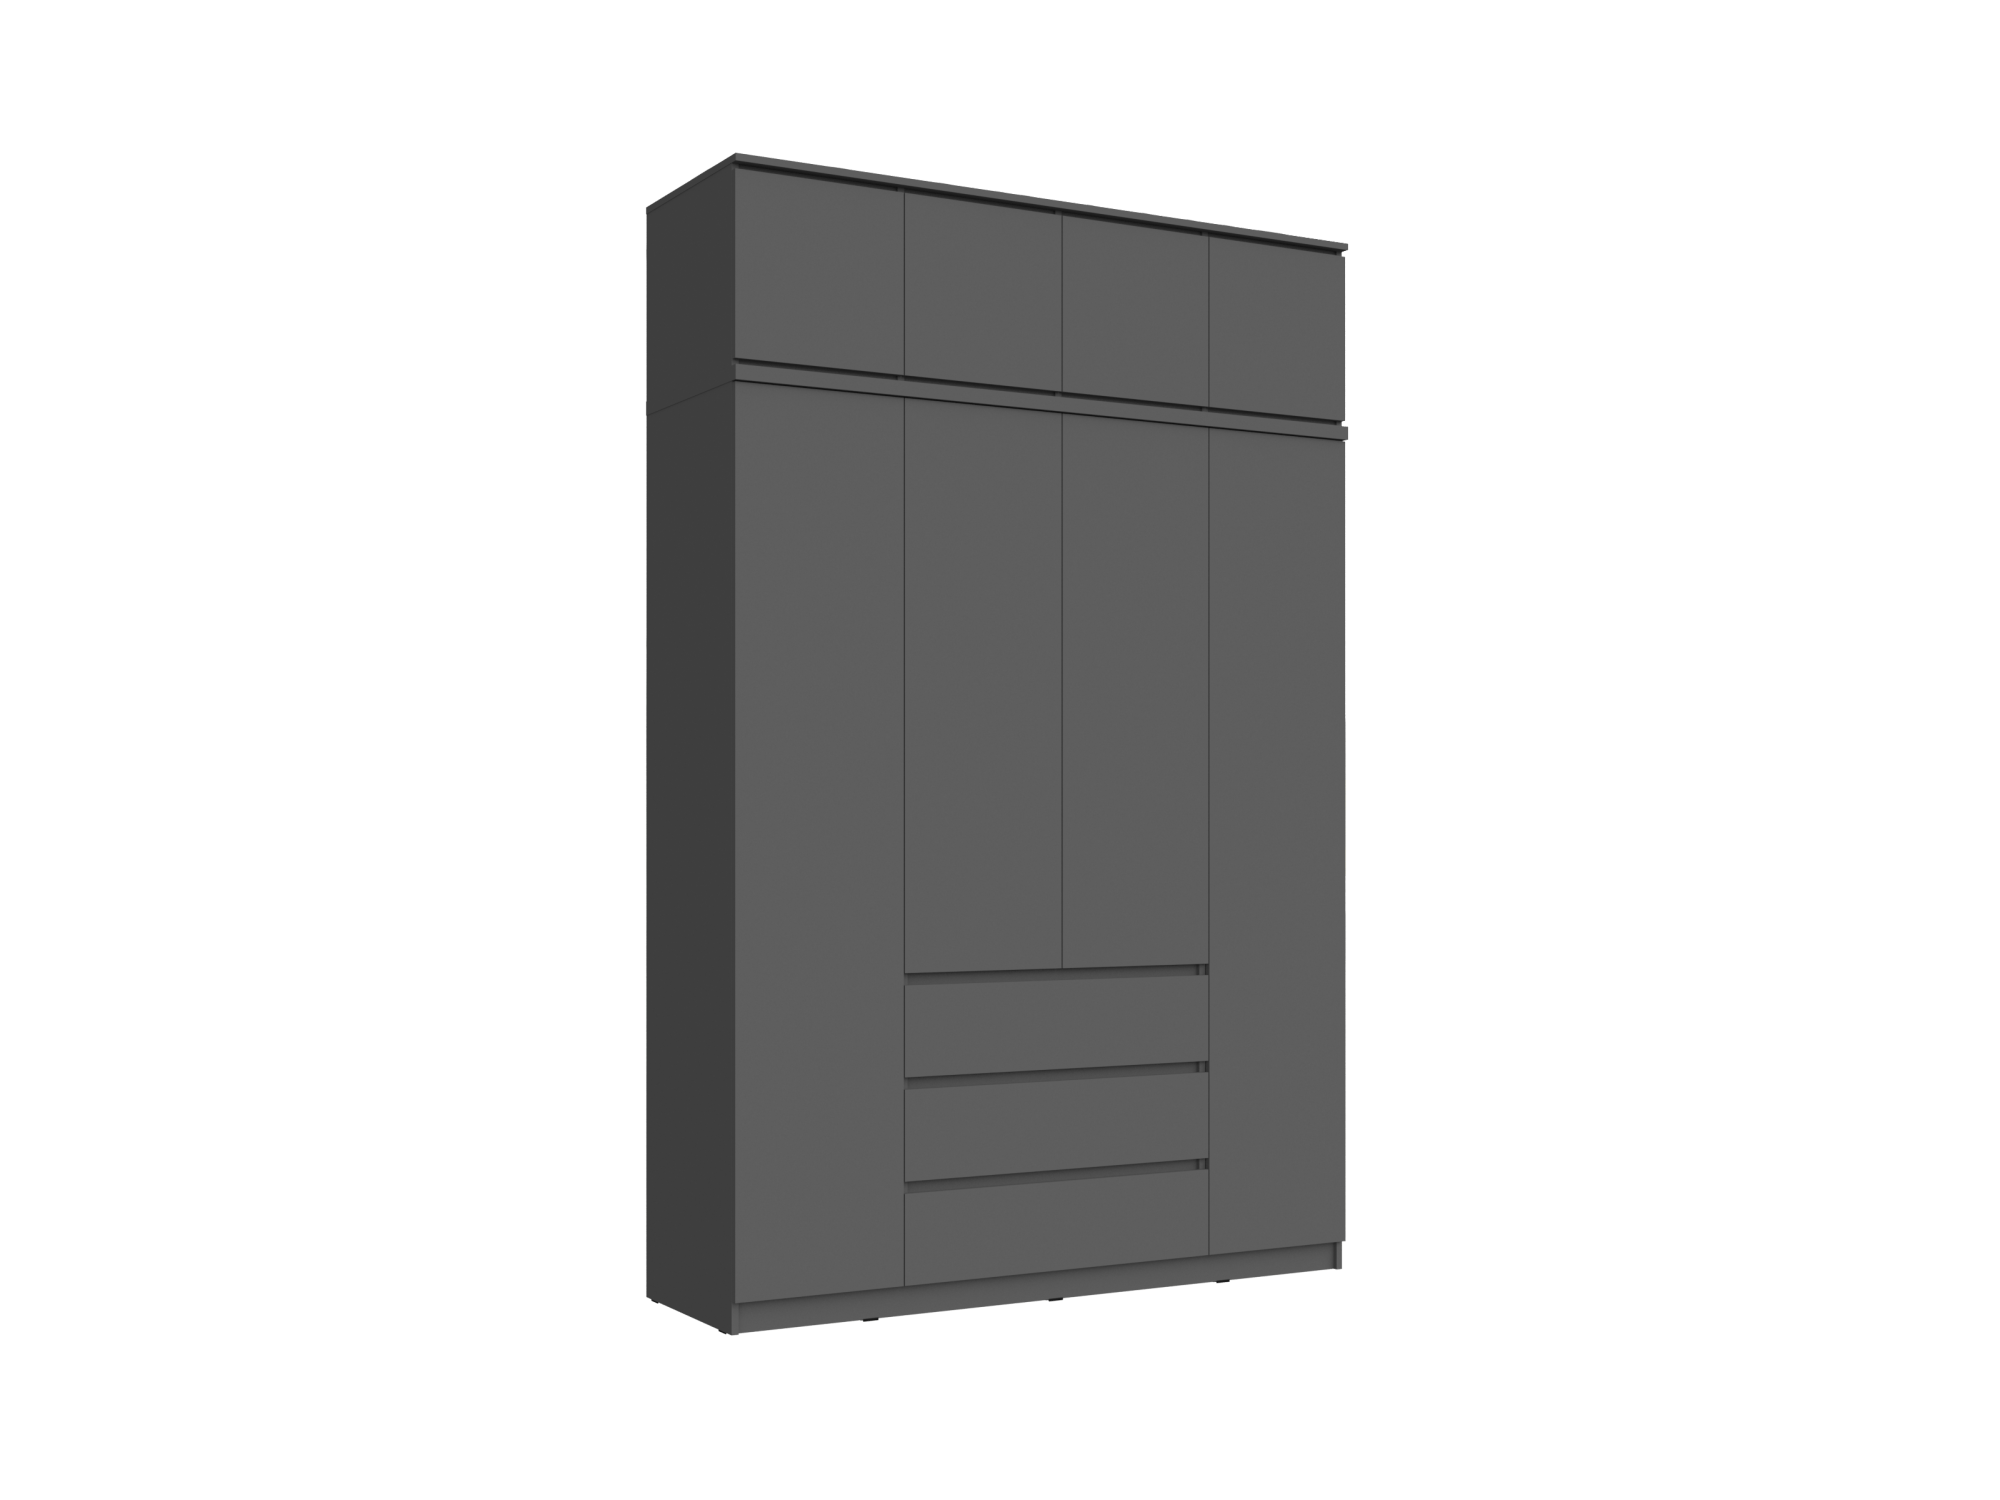 Челси Шкаф 1600 + антресоль 1600 (Графит, Графит) Черный, ЛДСП челси шкаф 2 х створчатый комбинированный антресоль к шкафу 900 графит графит графит черный лдсп